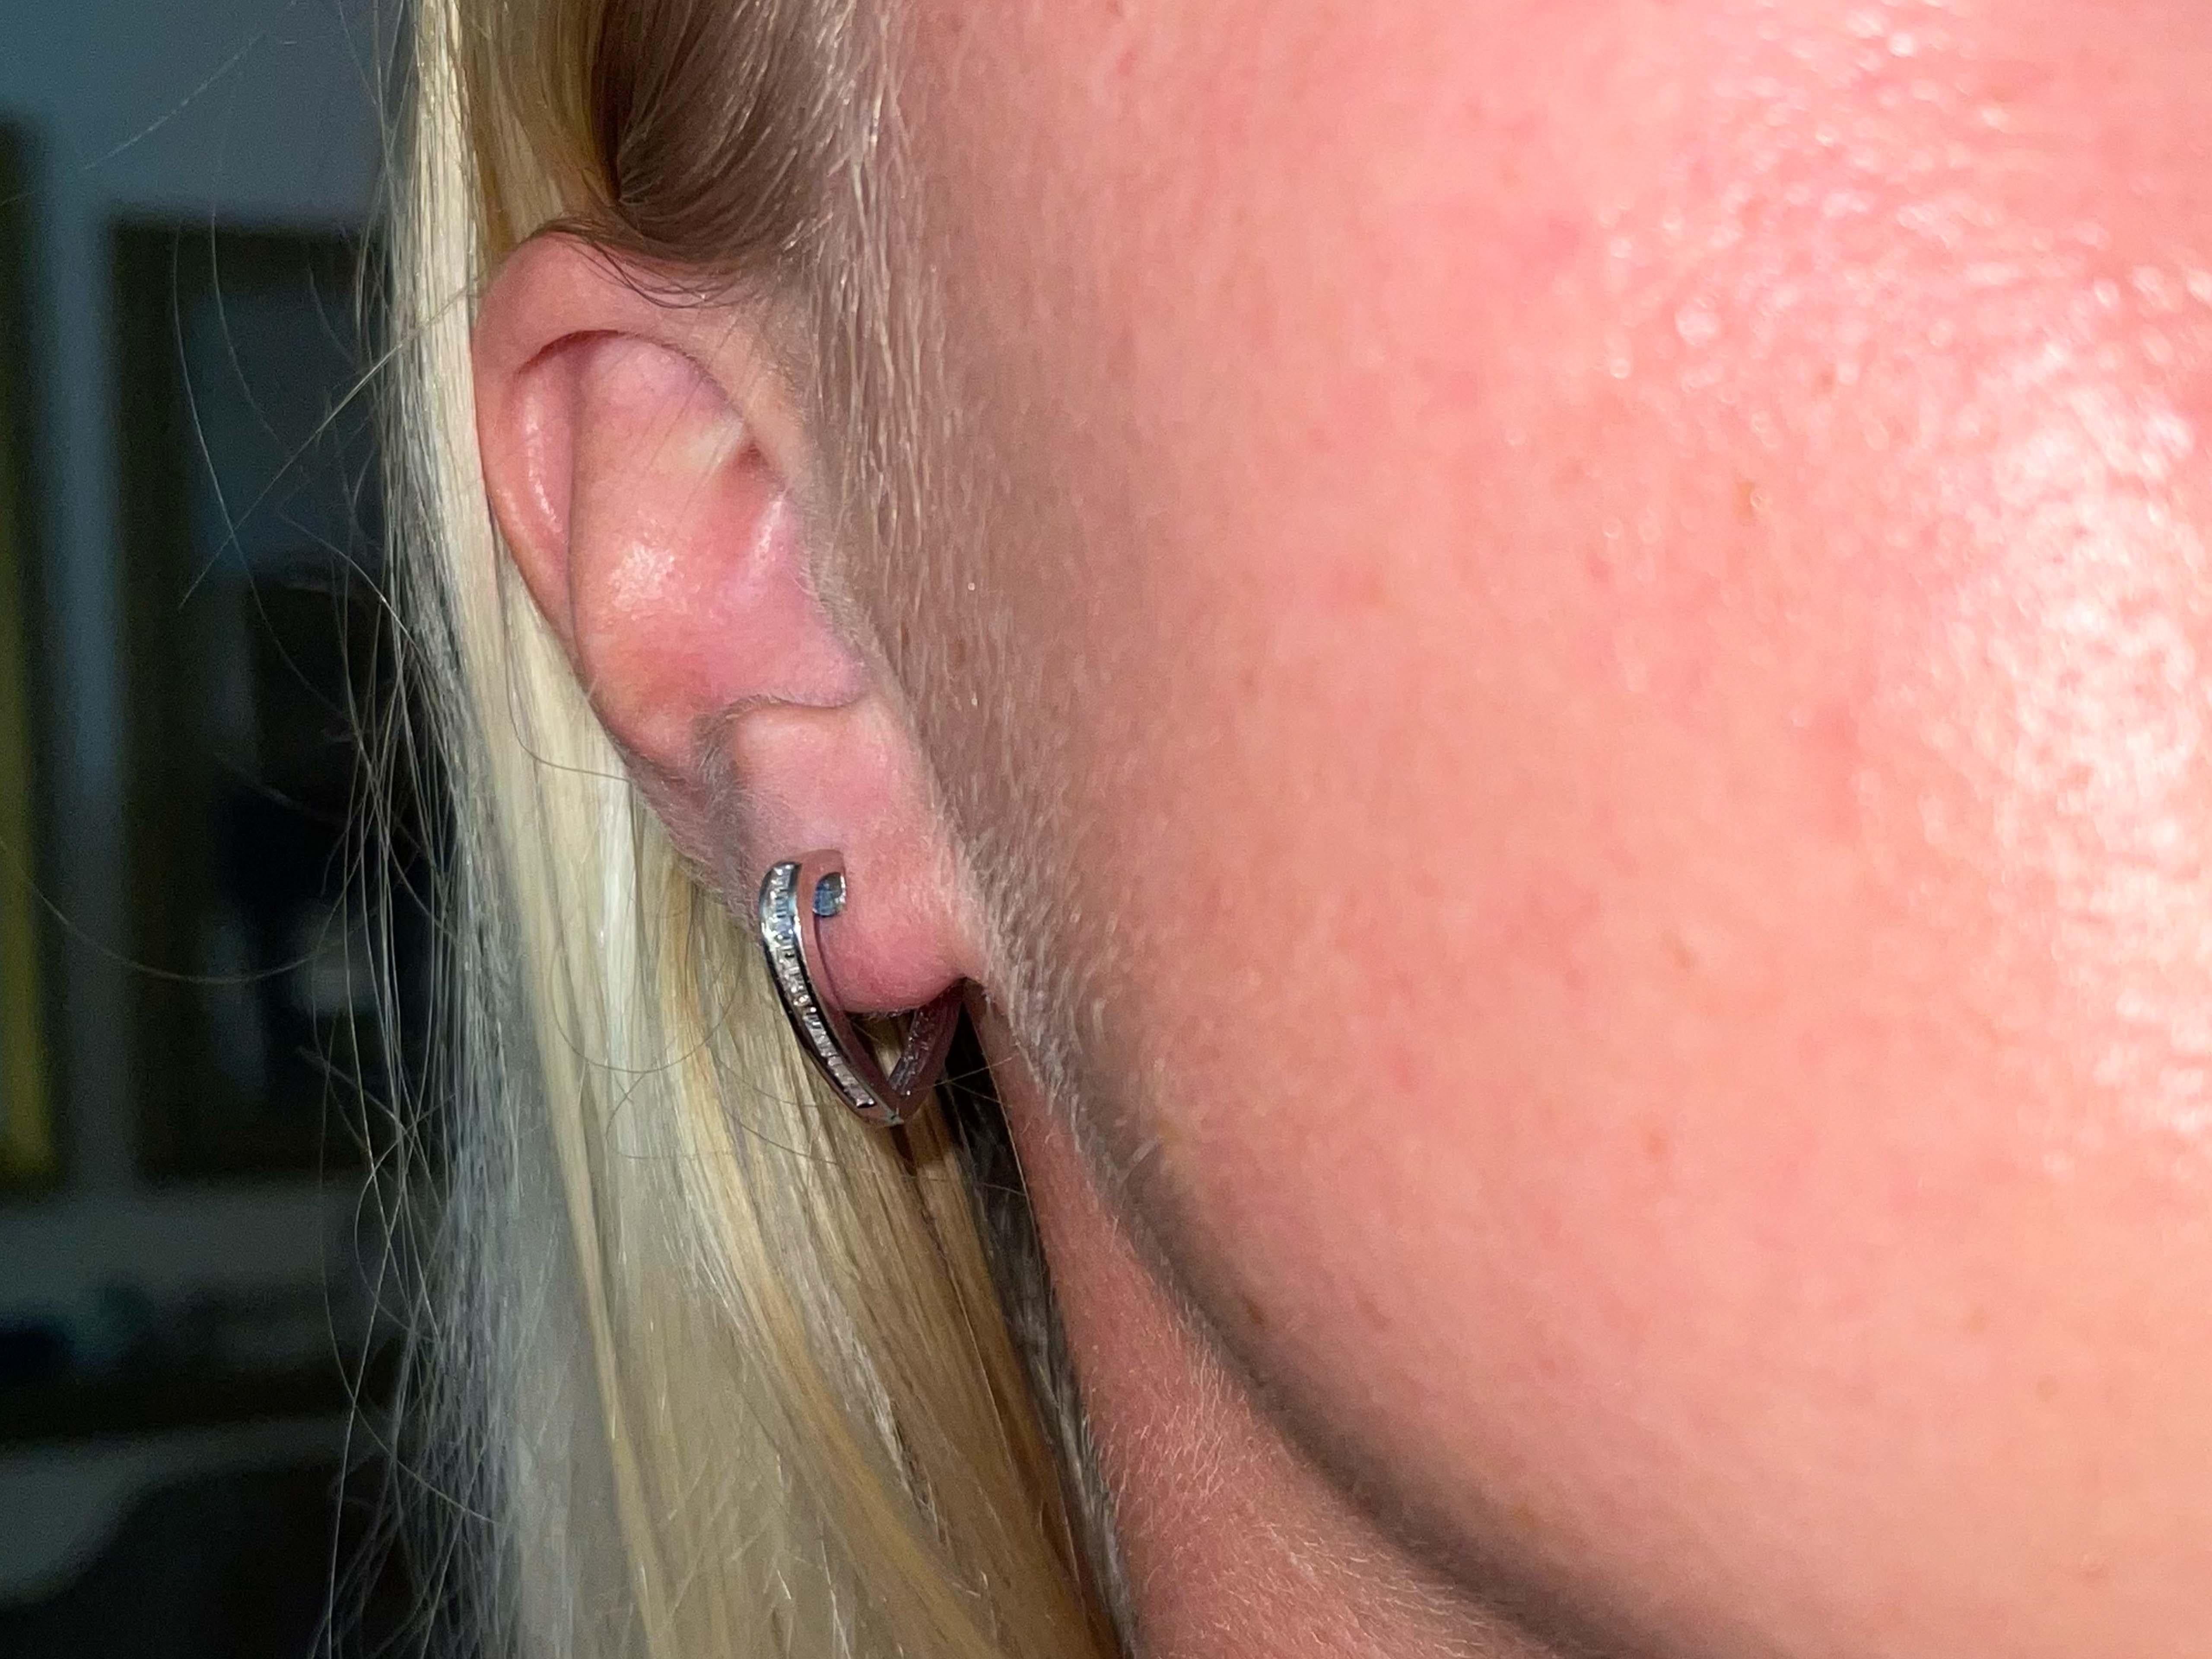 Boucles d'oreilles Spécifications :

Métal : Or blanc 18K

Poids total : 3,1 grammes

Diamètre de la boucle d'oreille : 0,60